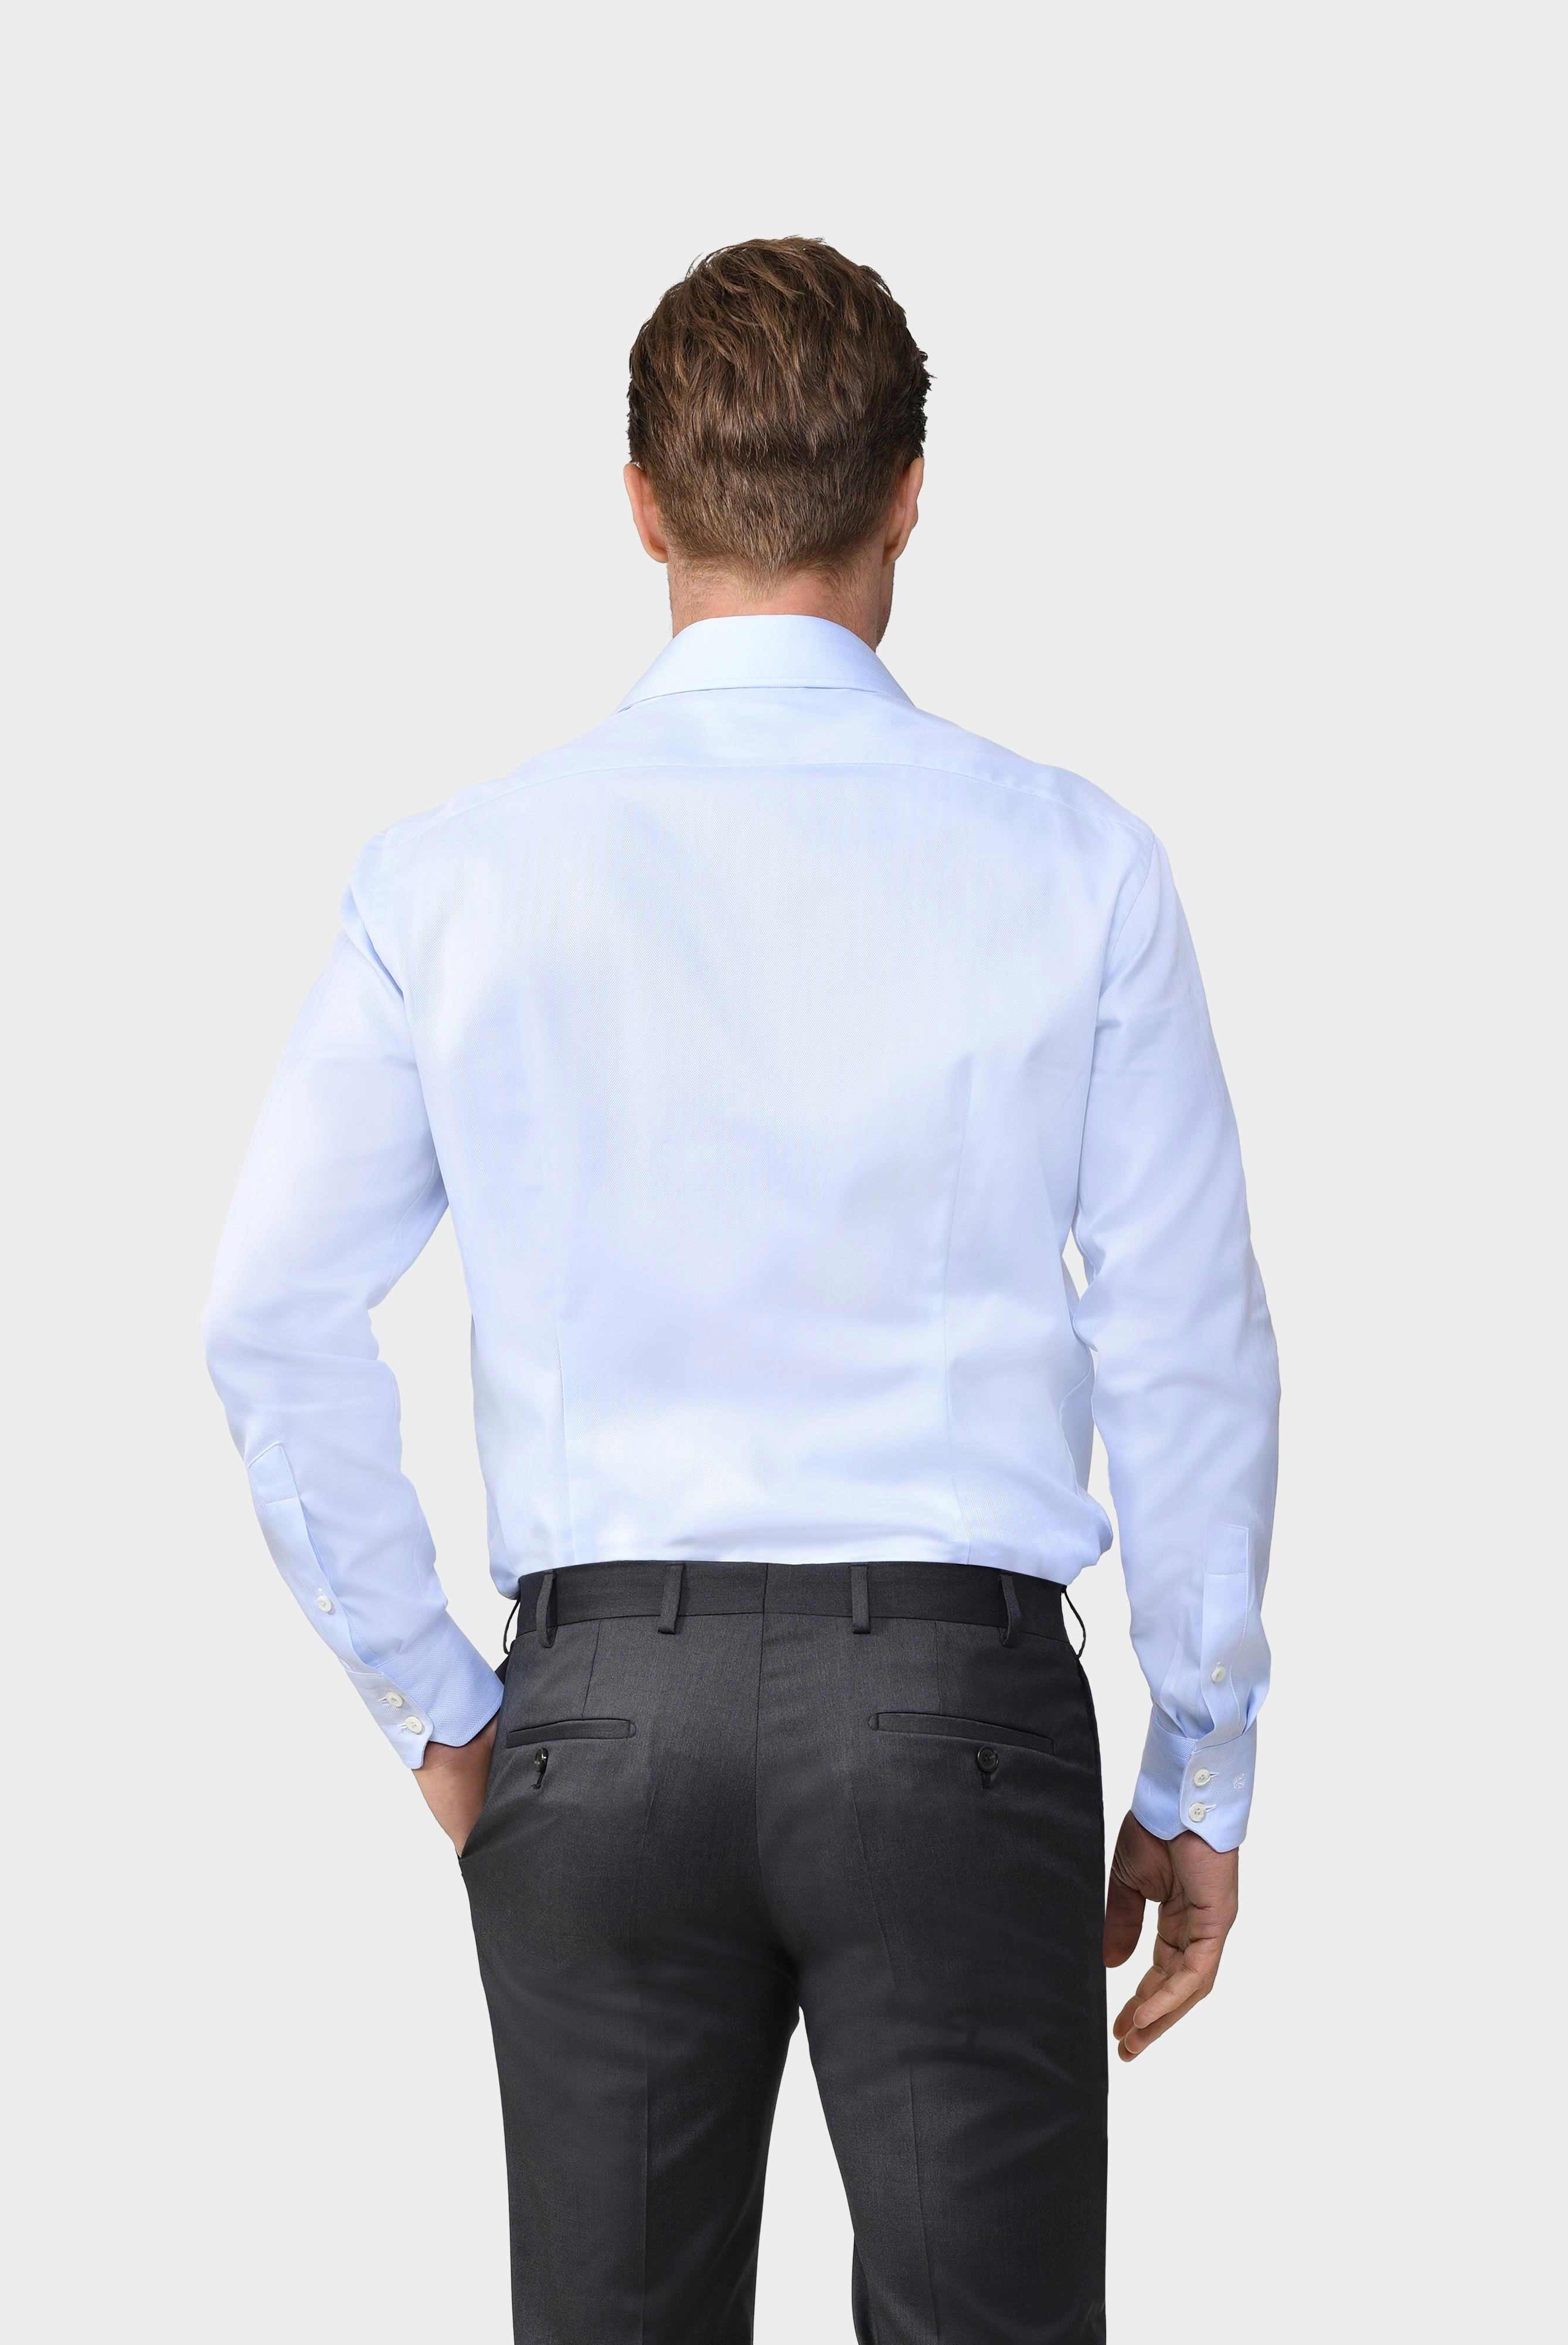 Business Hemden+Twill Hemd mit Fischgrat Tailor Fit+20.2020.AV.102501.710.41